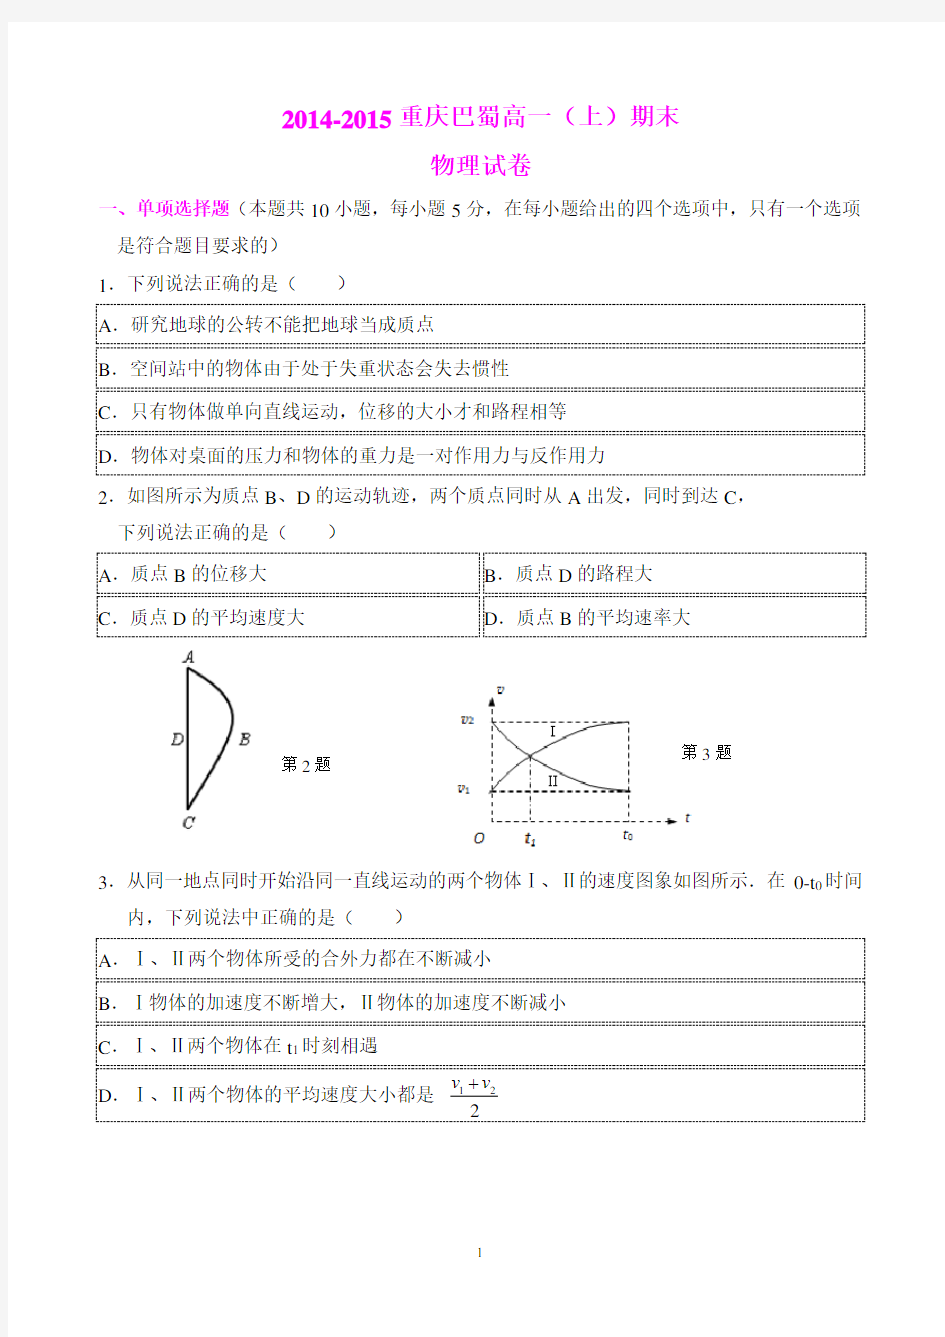 (完整)重庆巴蜀中学高2017级高一(上)期末物理试卷及其答案